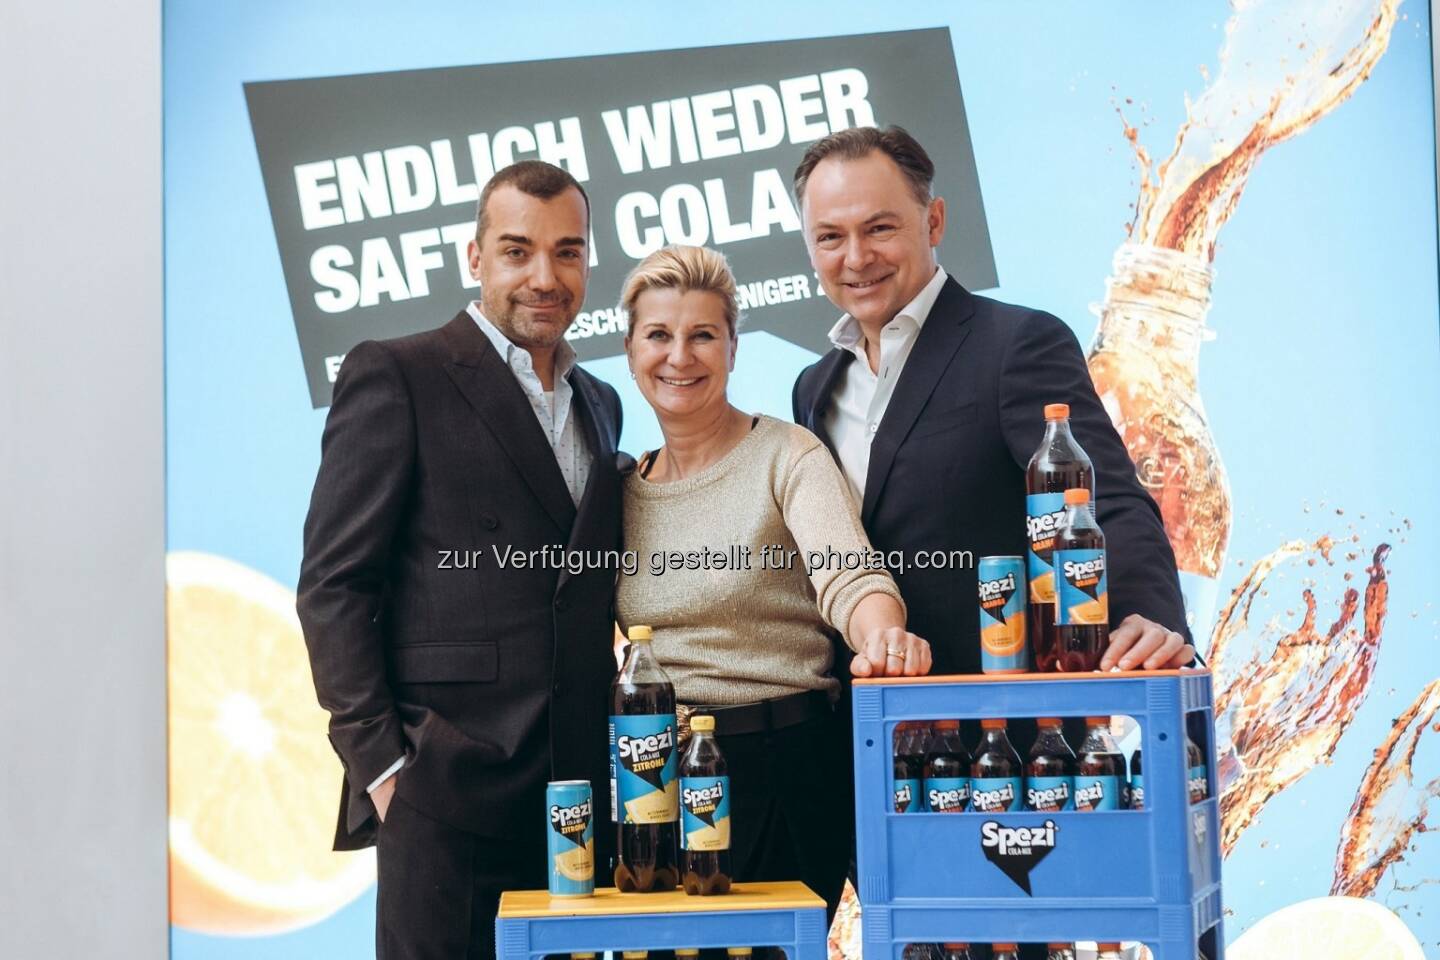 Almdudler Limonade A.& S. Klein GmbH & Co KG: Almdudler Innovationen und Spezi Cola-Mix:
Zwei Originale mischen den Markt auf